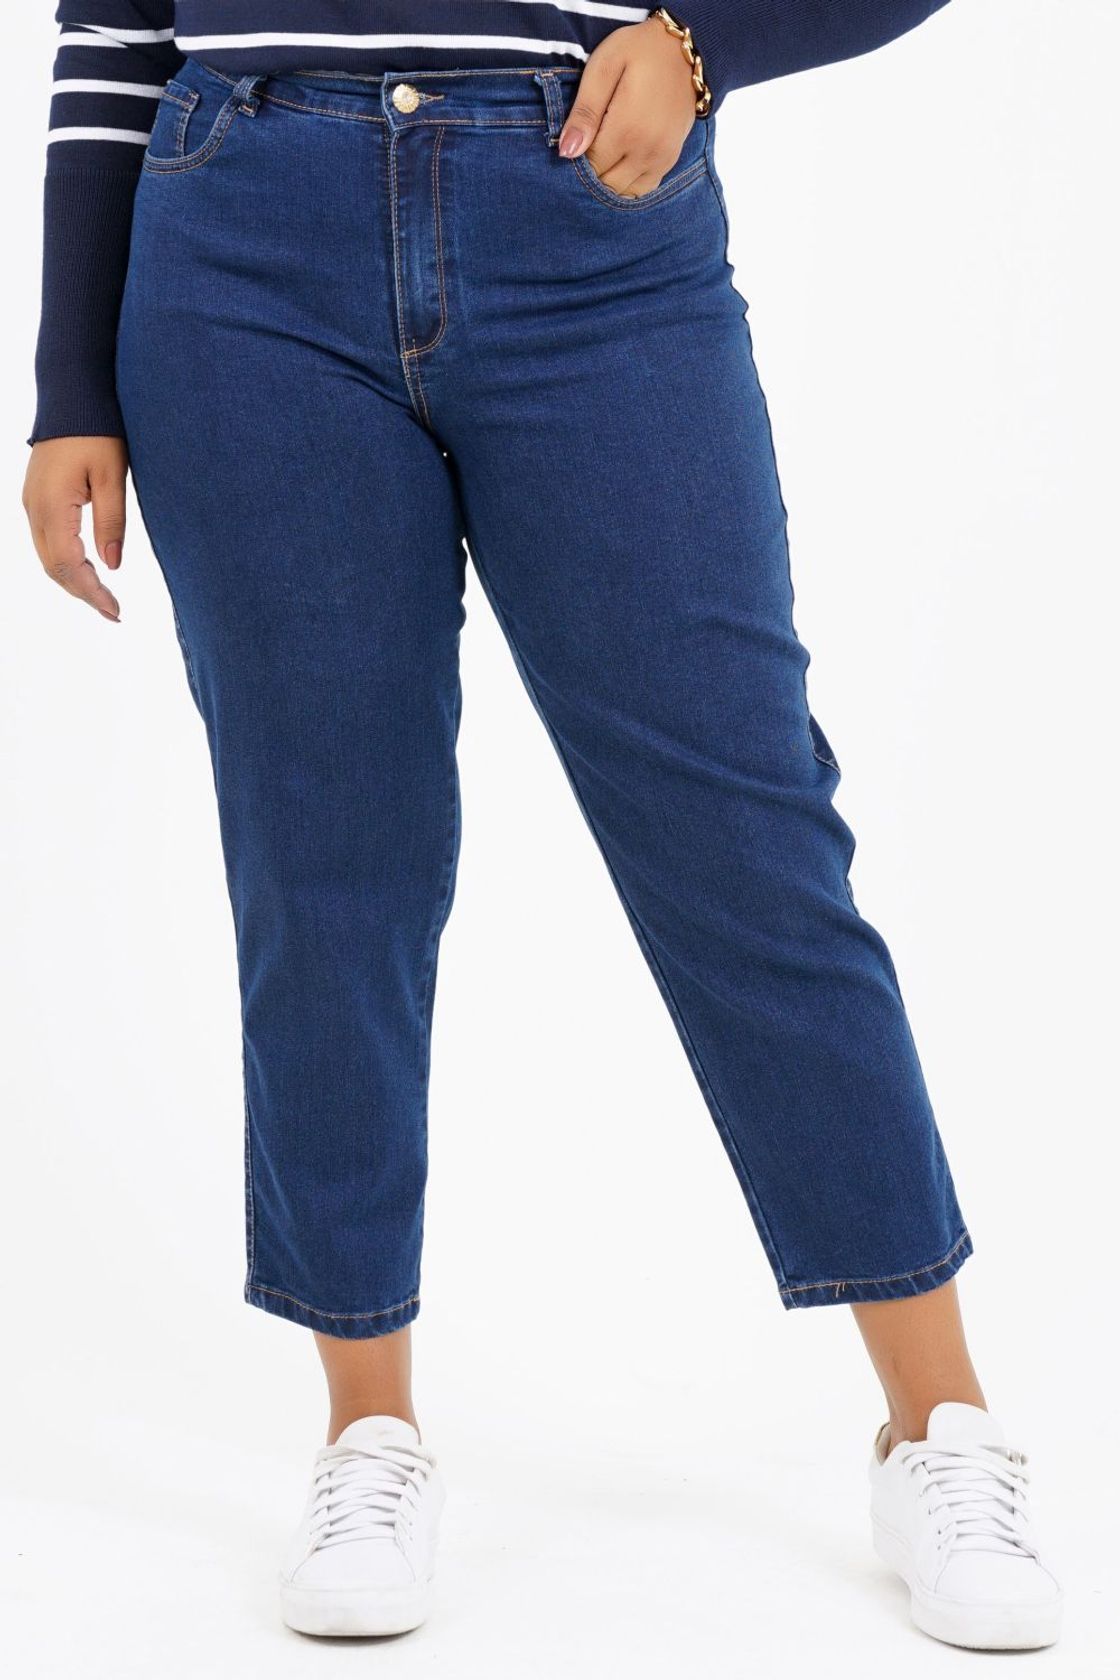 Calça Mom Plus Size Moçambique Jeans - Program Moda